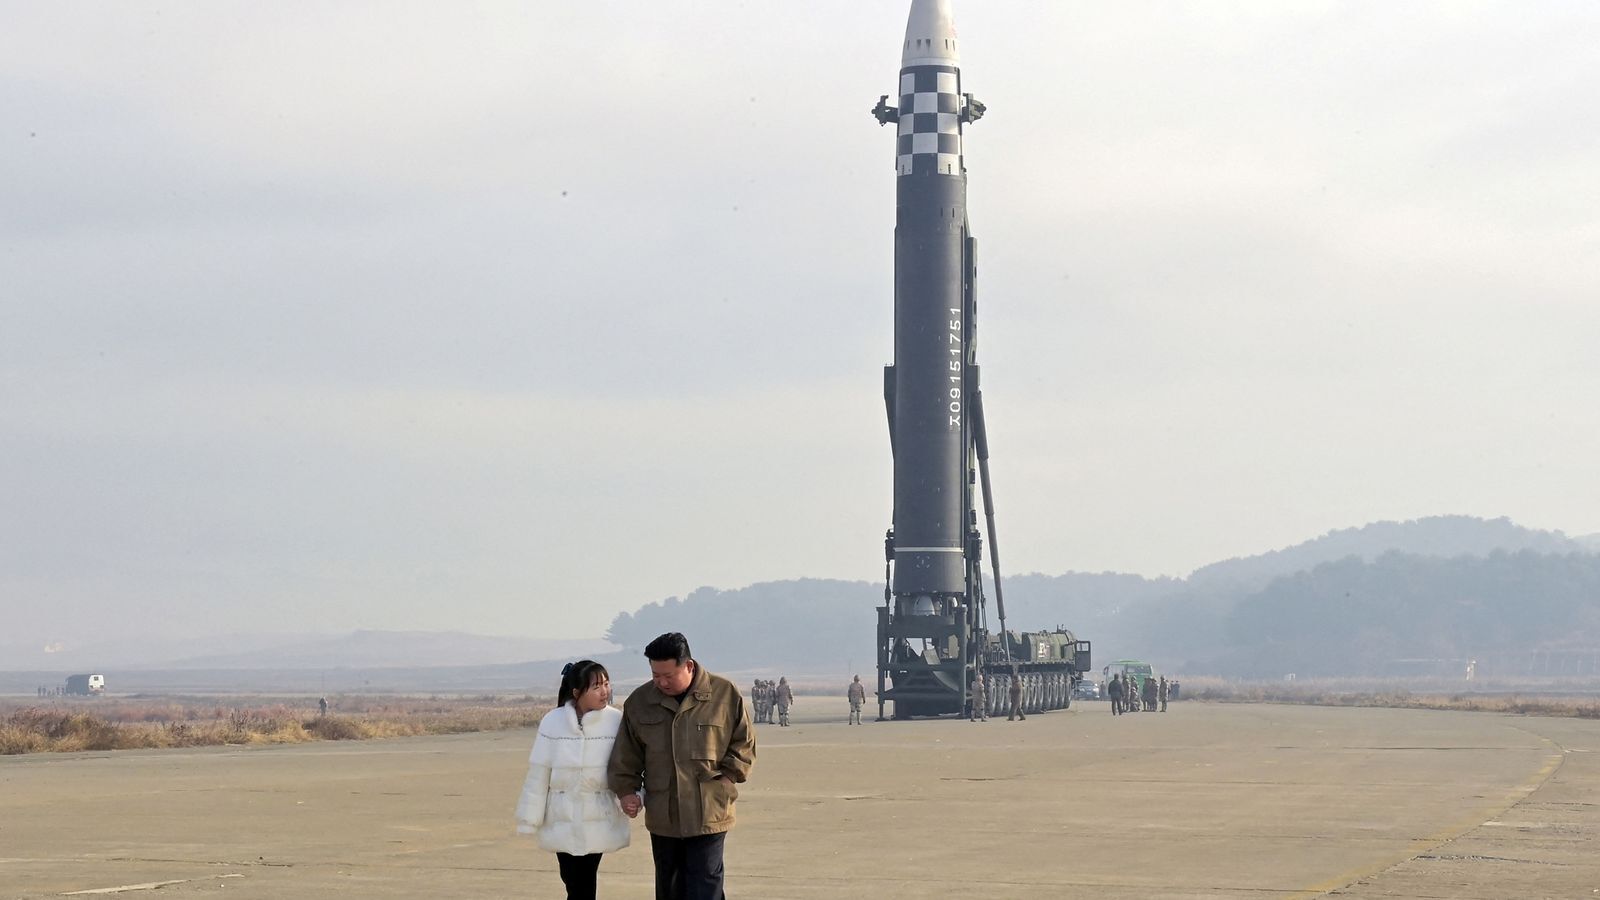 Ким Чен Ын впервые показал на публике свою дочь: она осматривала с ним баллистическую ракету перед запуском. Фото